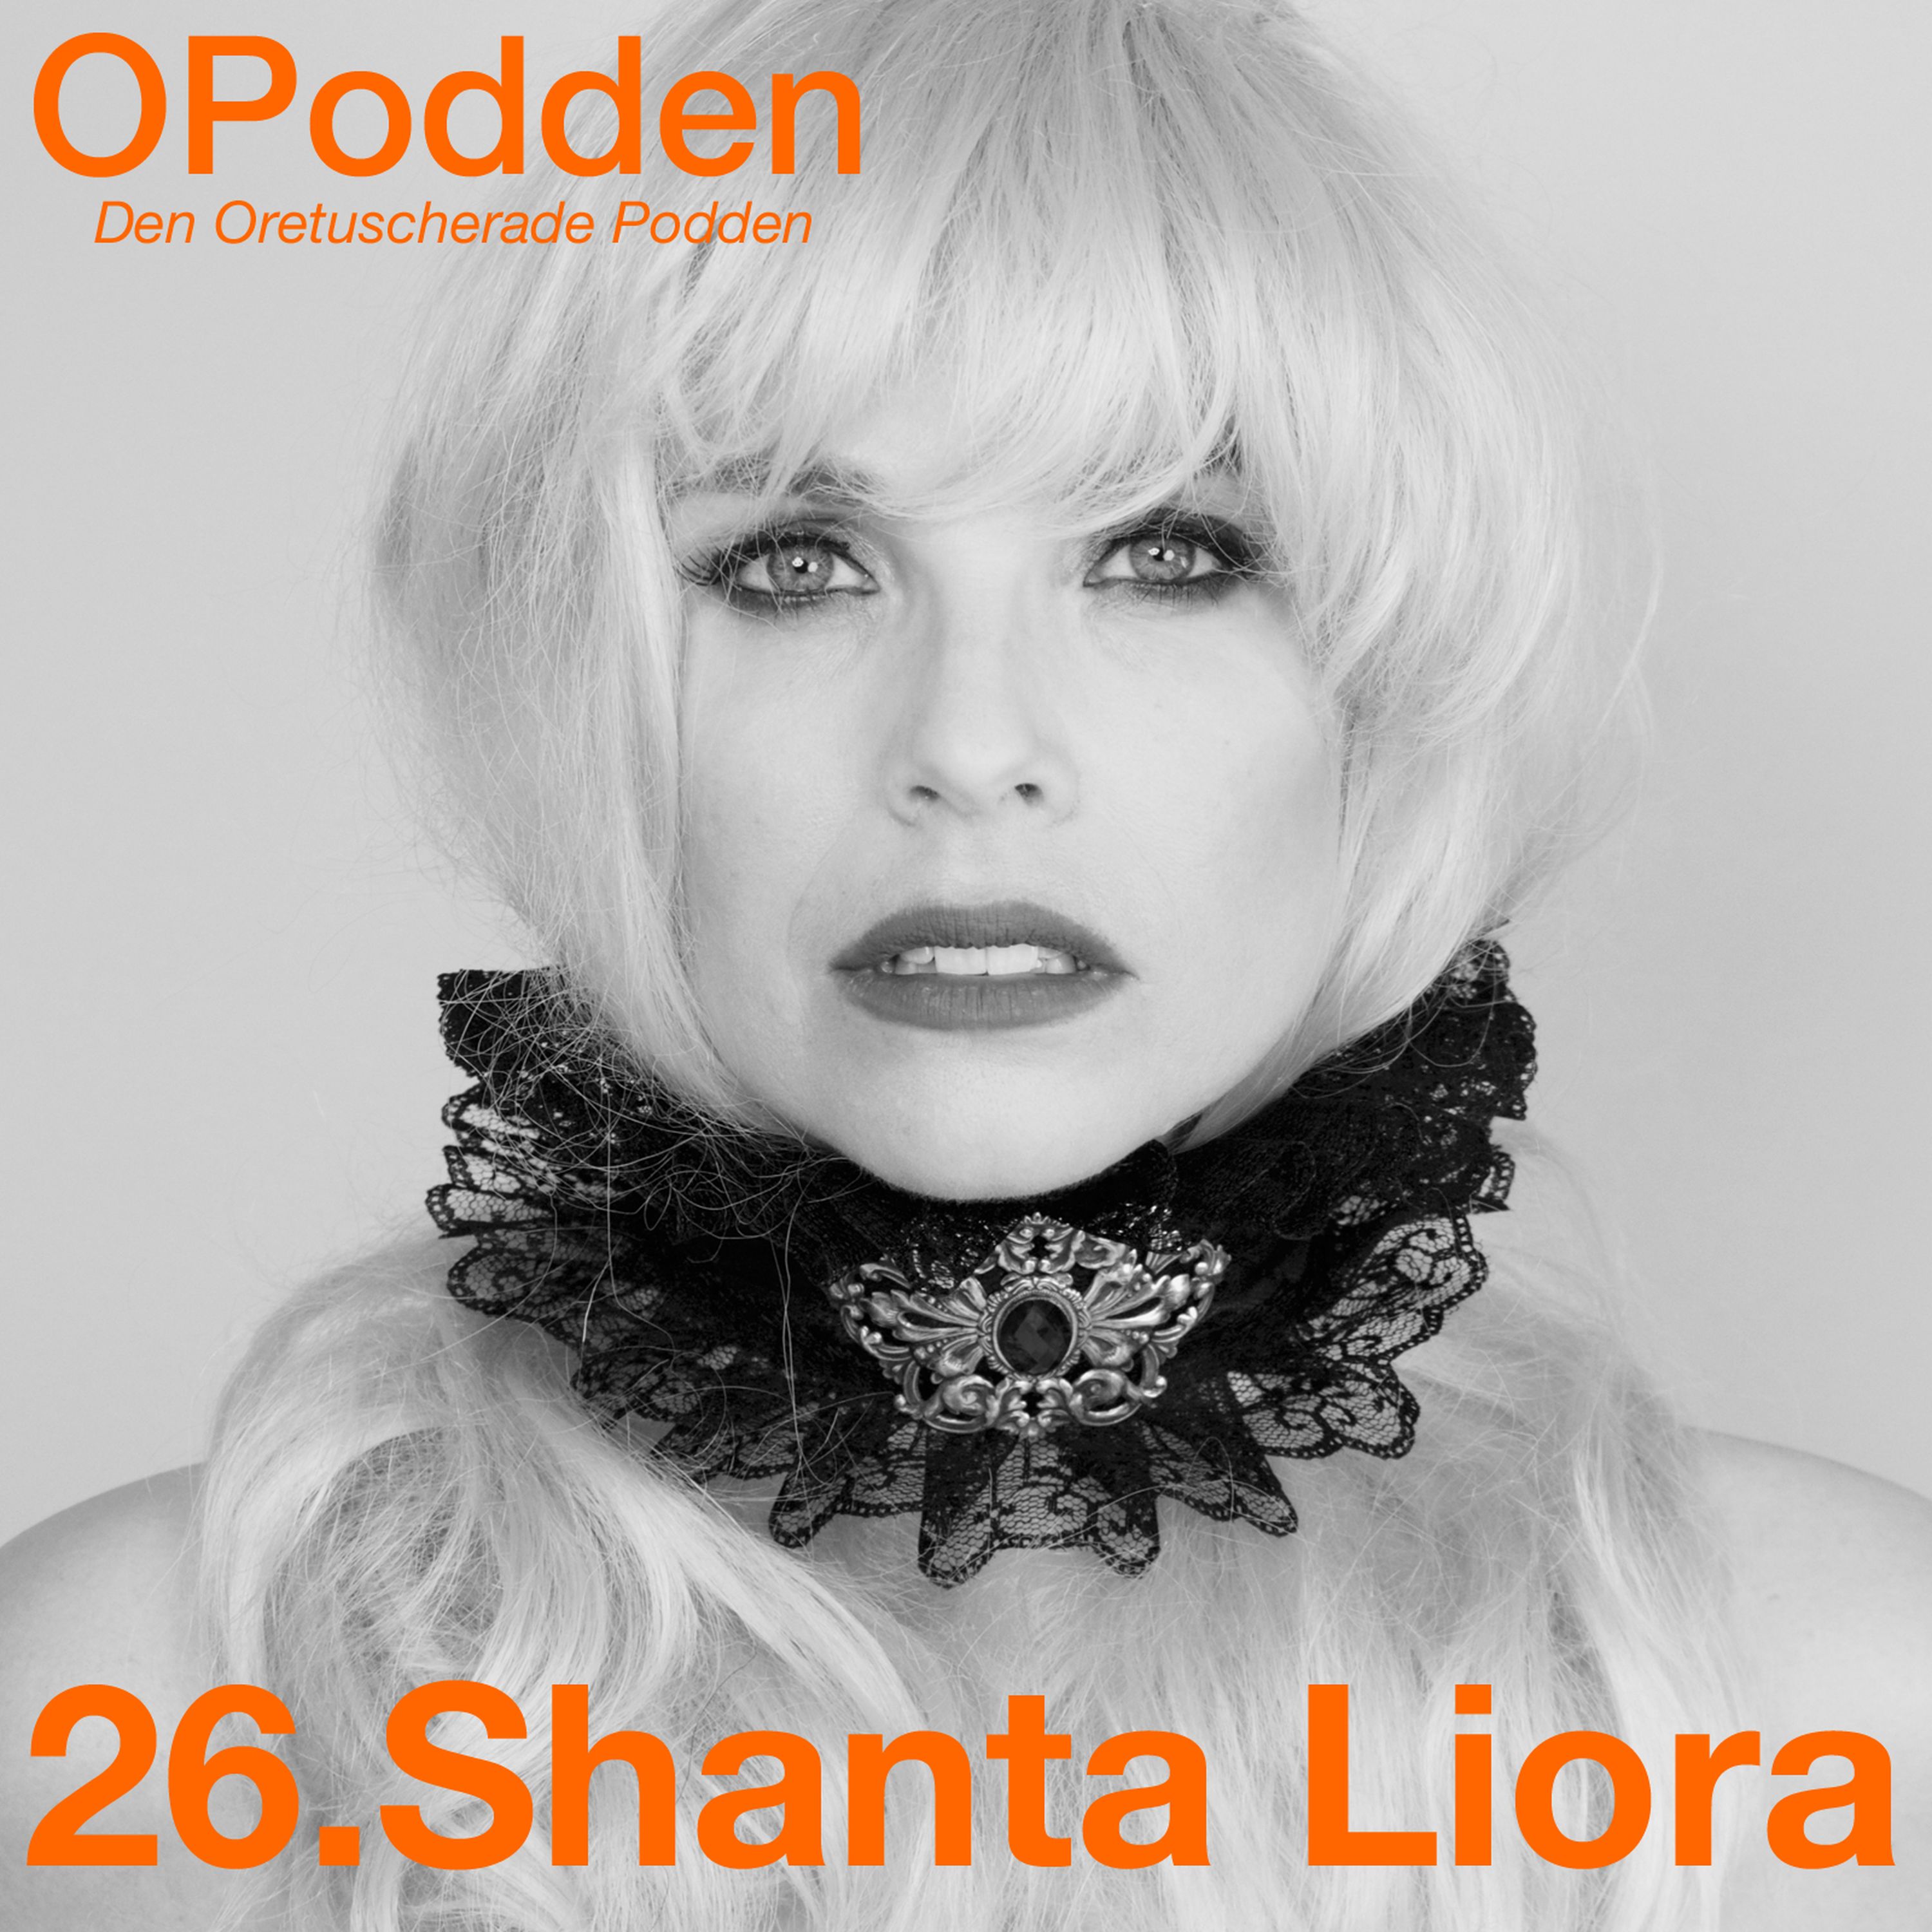 26.Shanta Liora